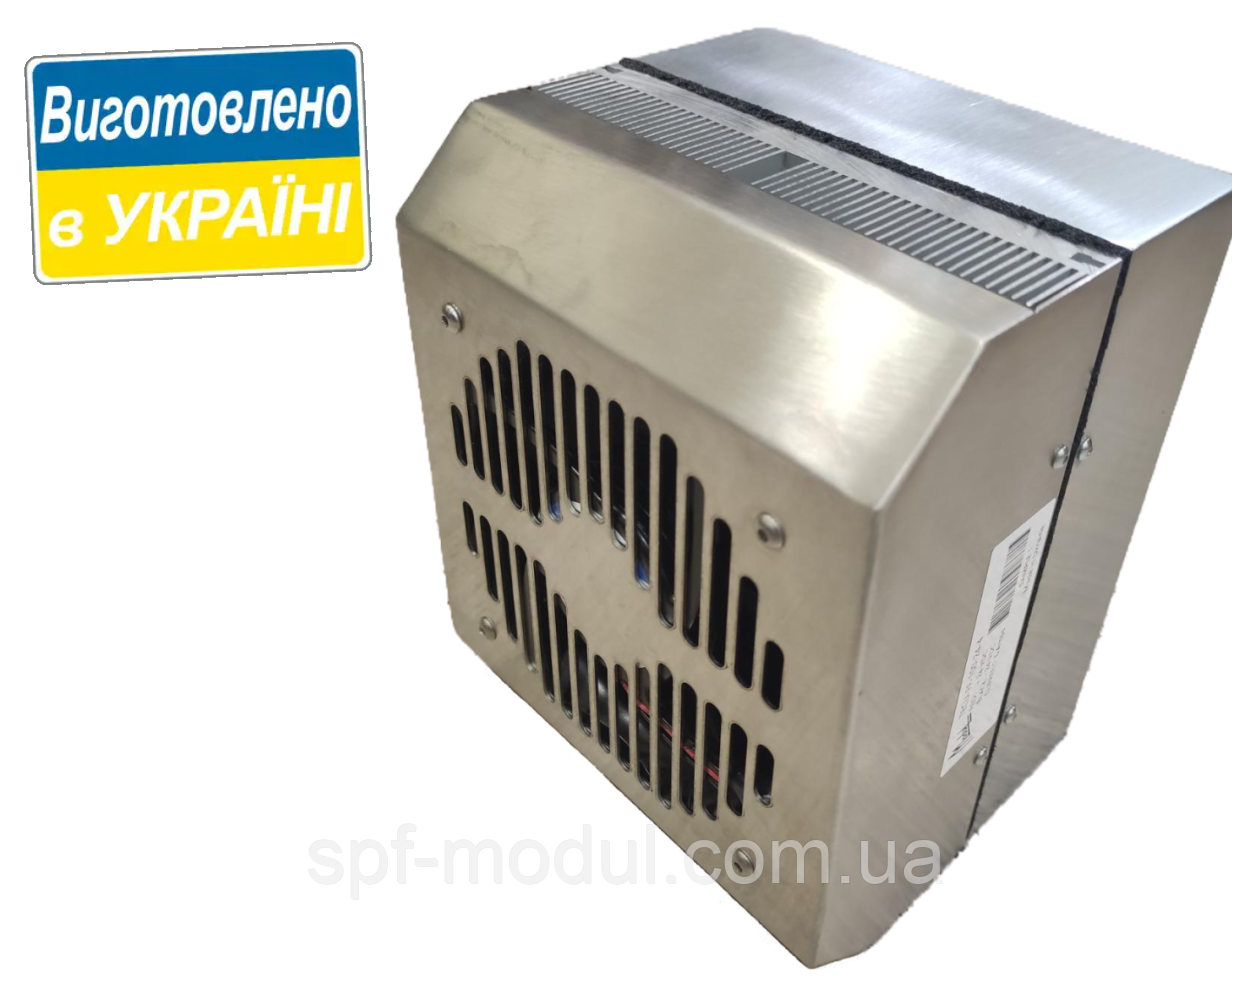 Термоелектричний охолоджуючий агрегат TECU-FF-100-24-4 (100 Вт)